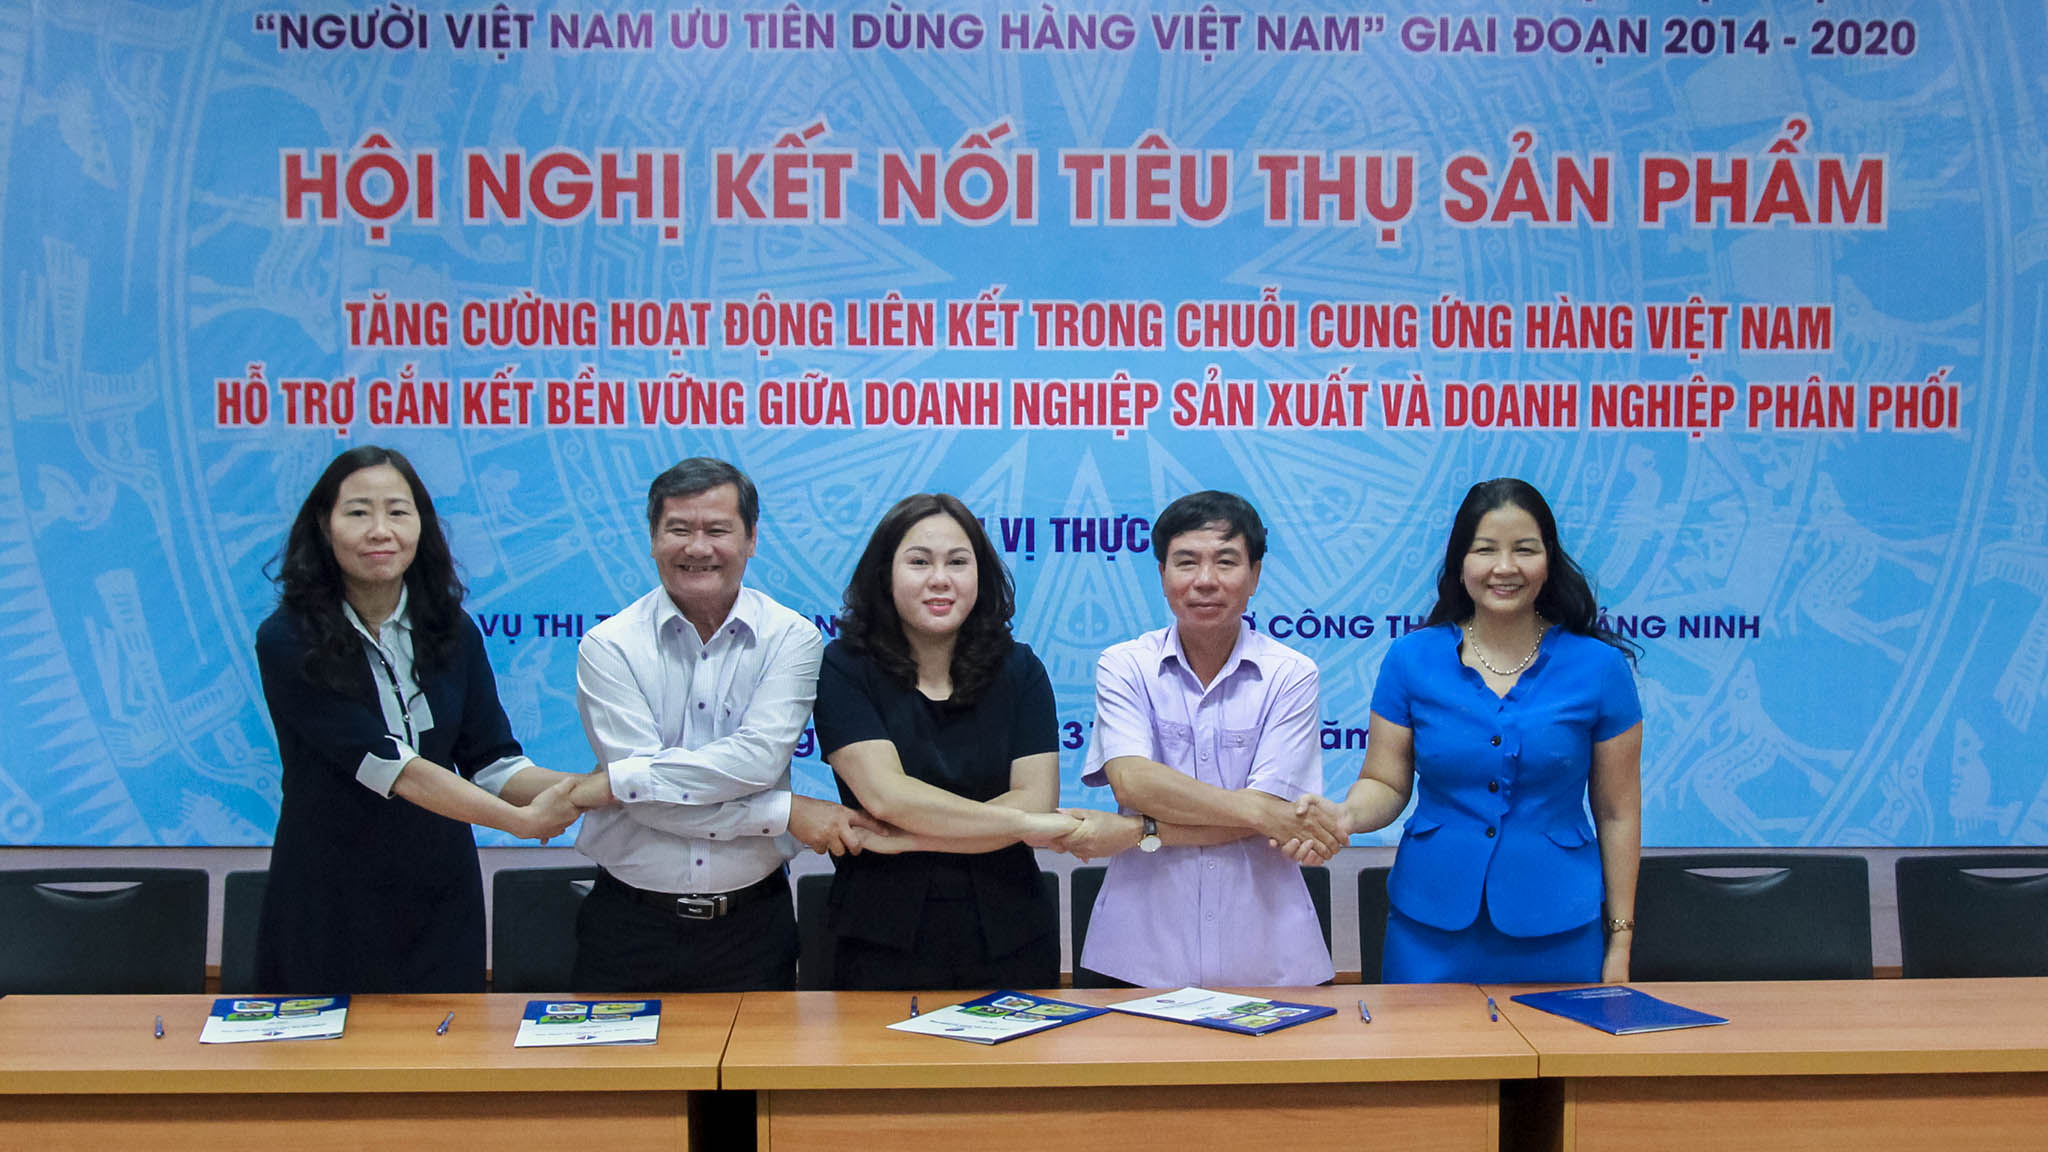 Sở Công thương Quảng Ninh ký kết hợp tác với các Sở Công thương Hà Nội, Hòa Bình, Ninh Bình, Tây Ninh.